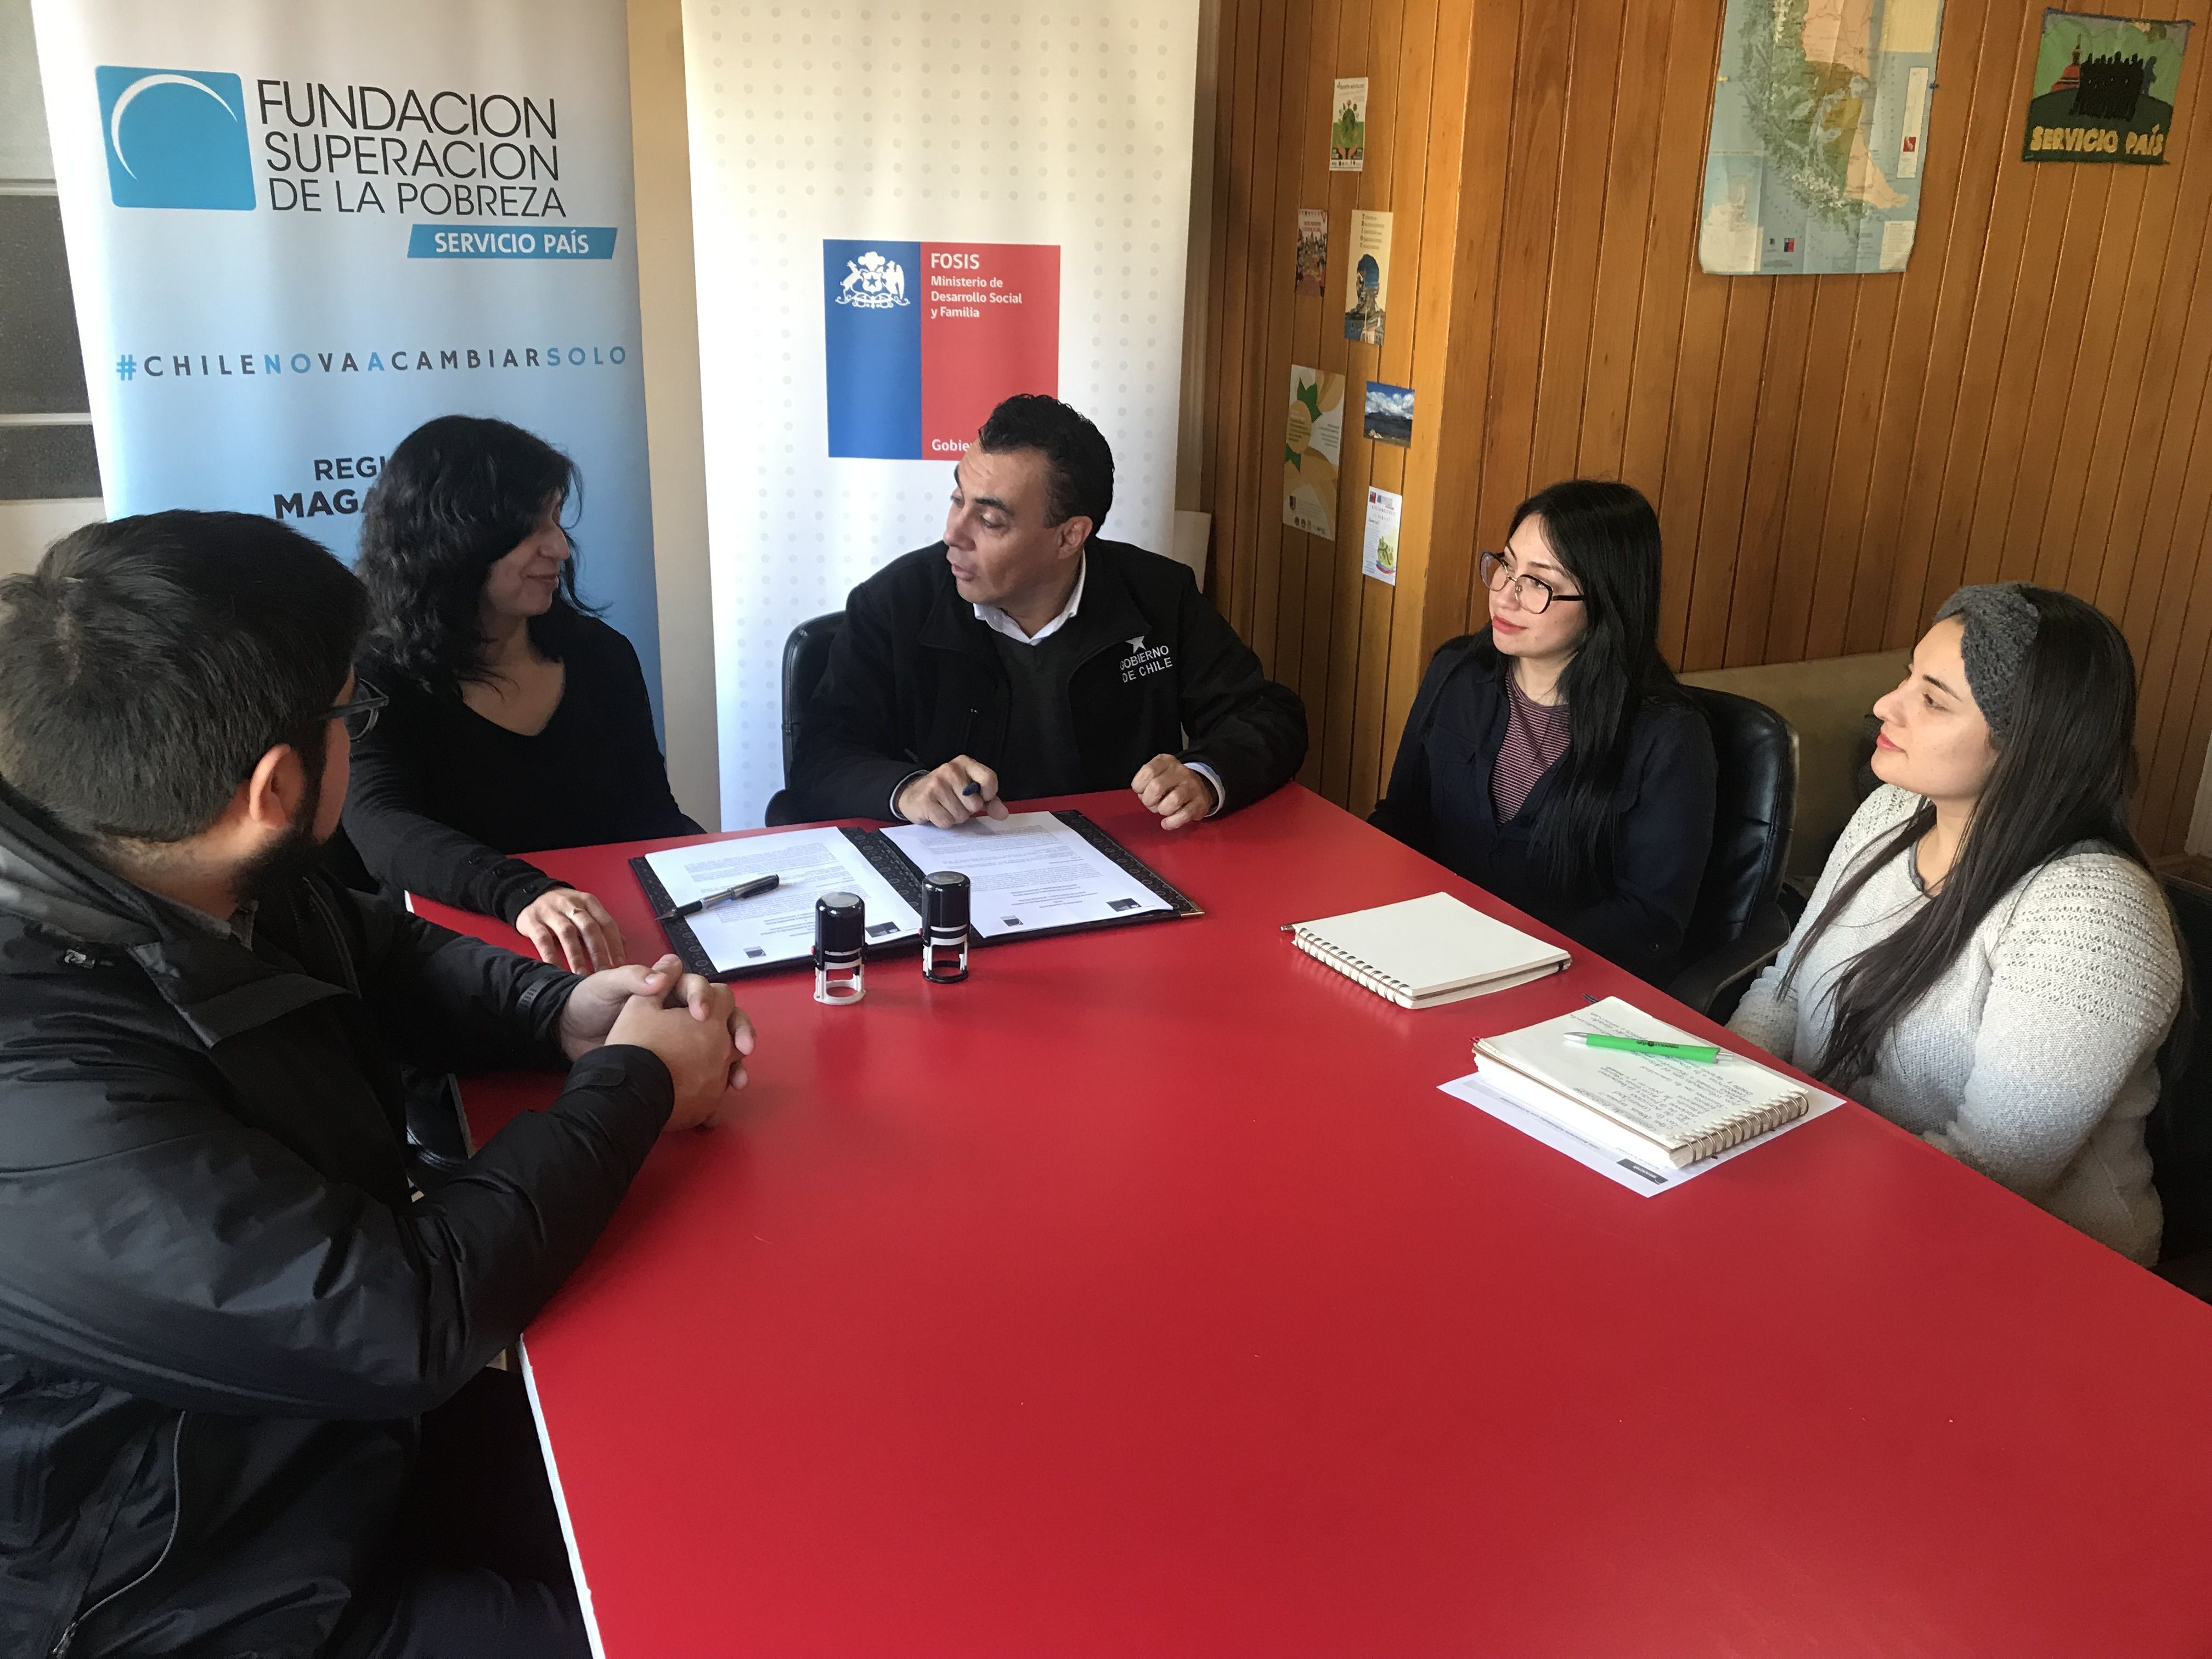 Alianza entre el FOSIS y la Fundación para la Superación de la Pobreza (Servicio País), fortalecerá labor en la región de Magallanes